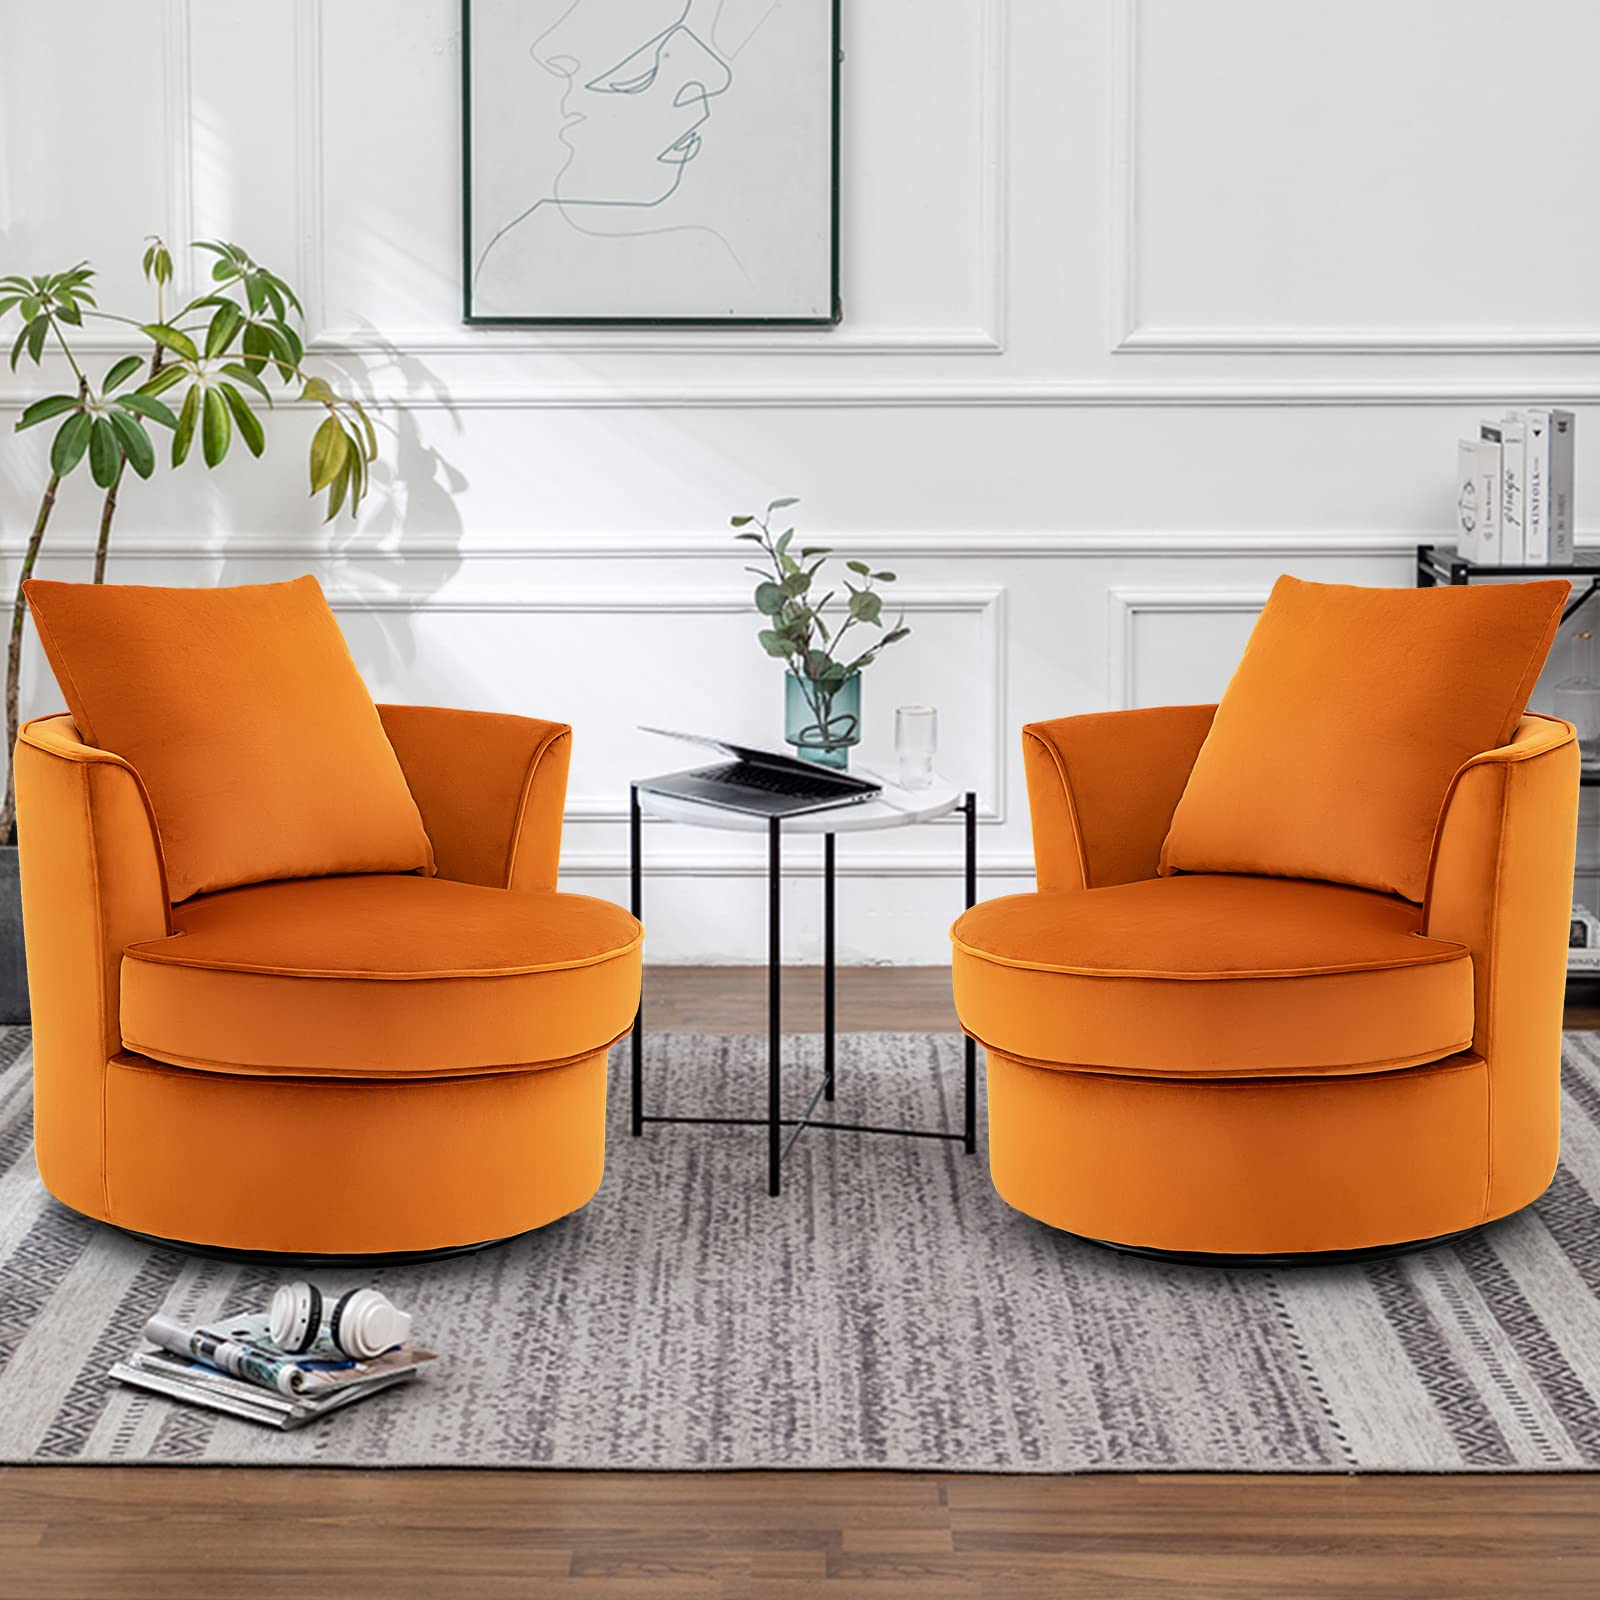 Giantex Swivel Chair for Living Room